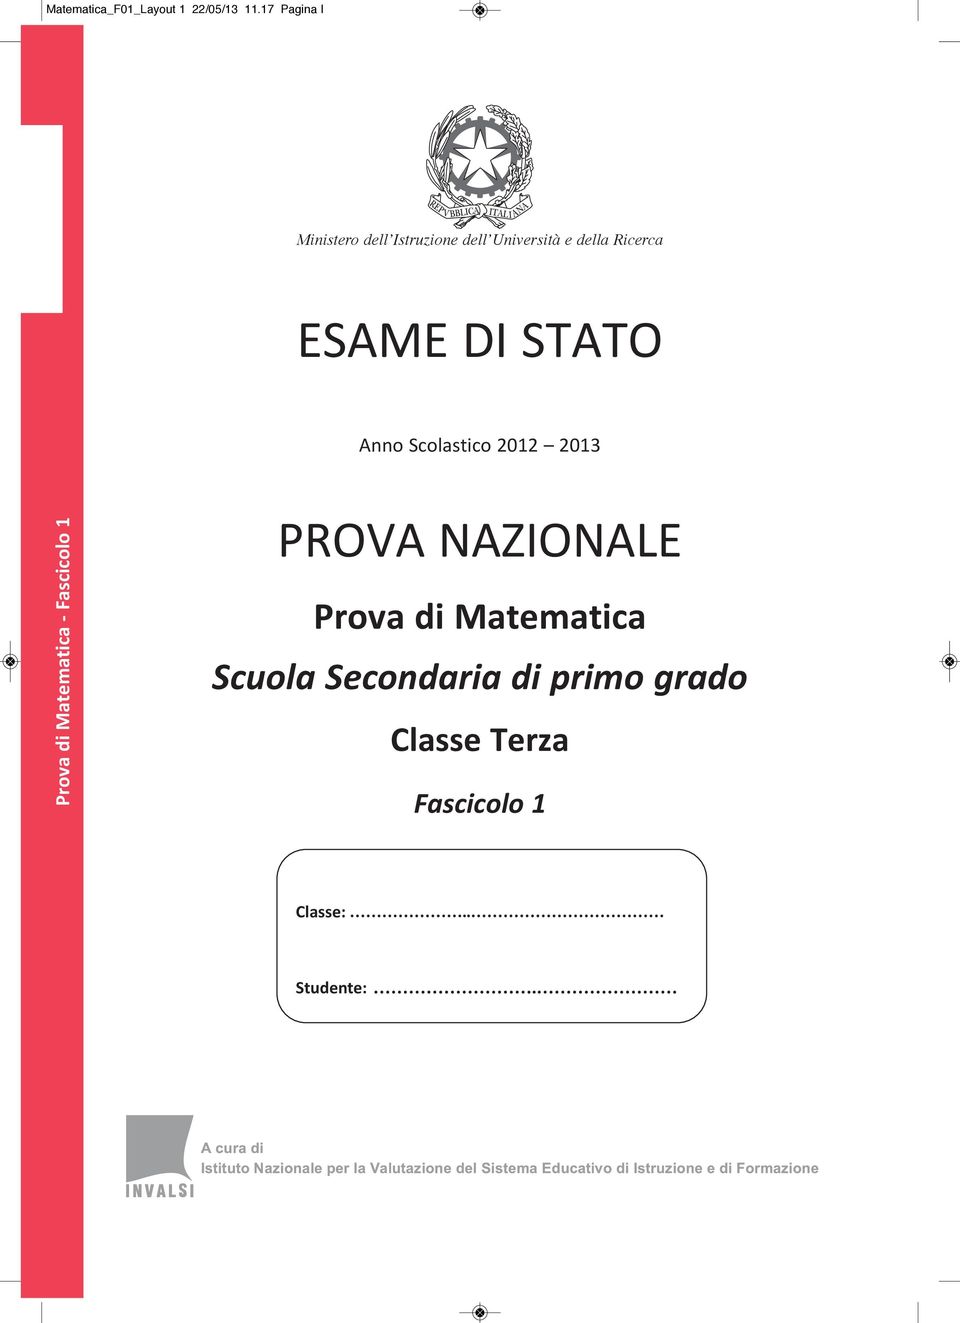 ESAME DI STATO Anno Scolastico 2012 2013 Prova di Matematica - Fascicolo